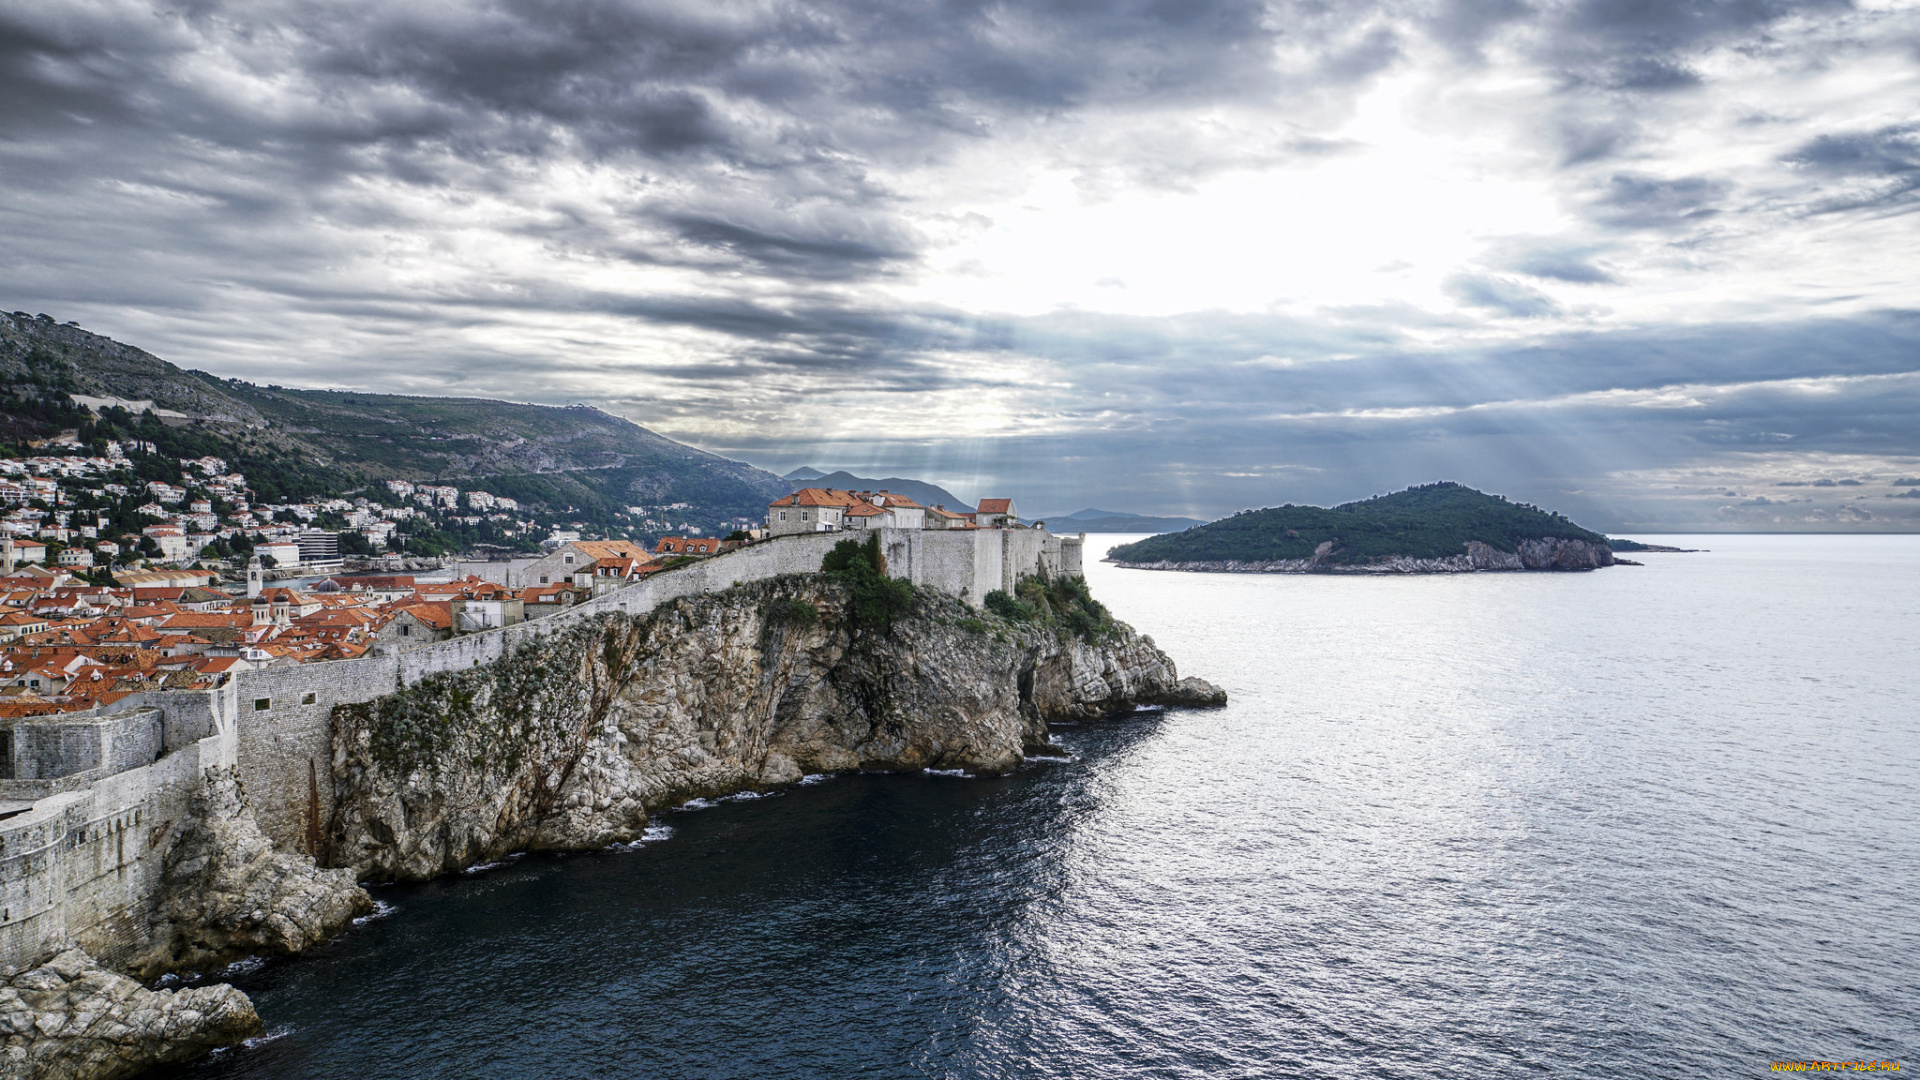 города, -, пейзажи, море, dubrovnik, хорватия, дубровник, панорама, croatia, пейзаж